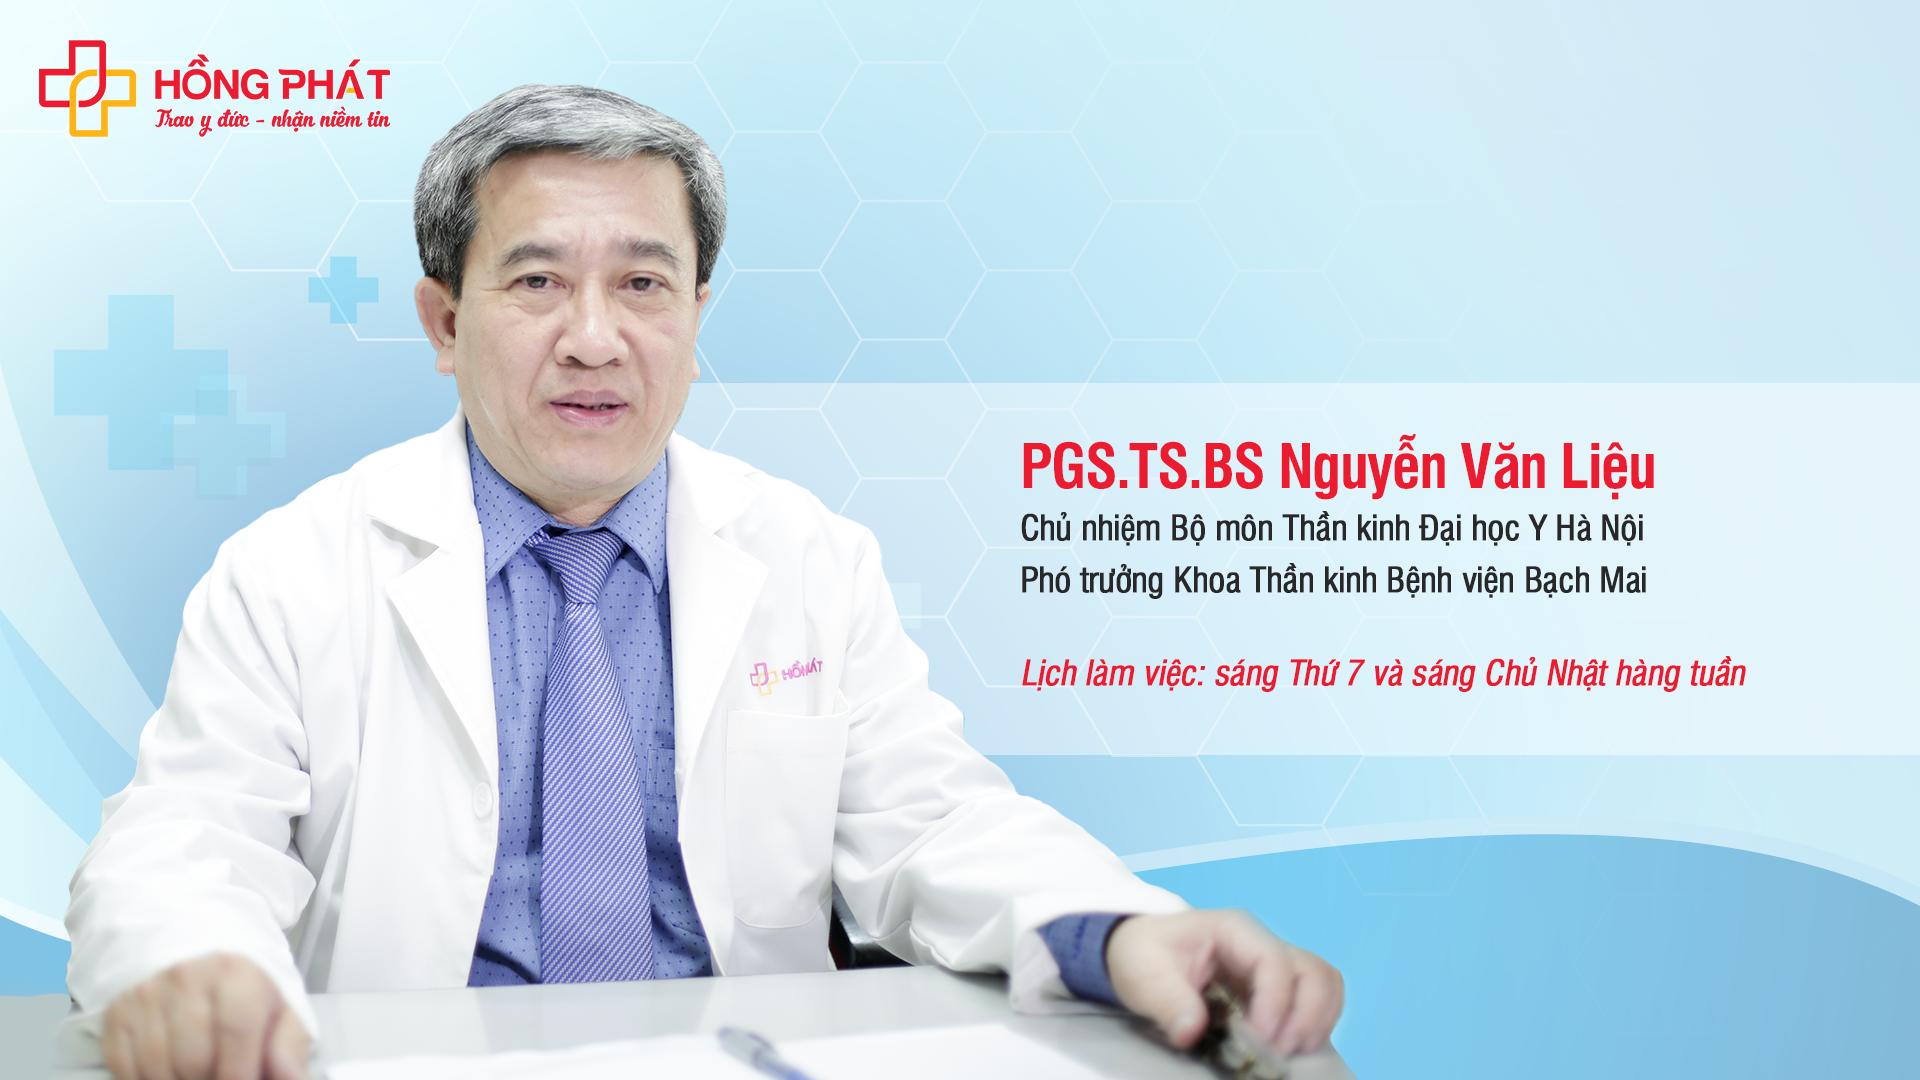 Phó Giáo sư, Tiến sĩ, Bác sĩ Nguyễn Văn Liệu - Chuyên gia về Thần kinh